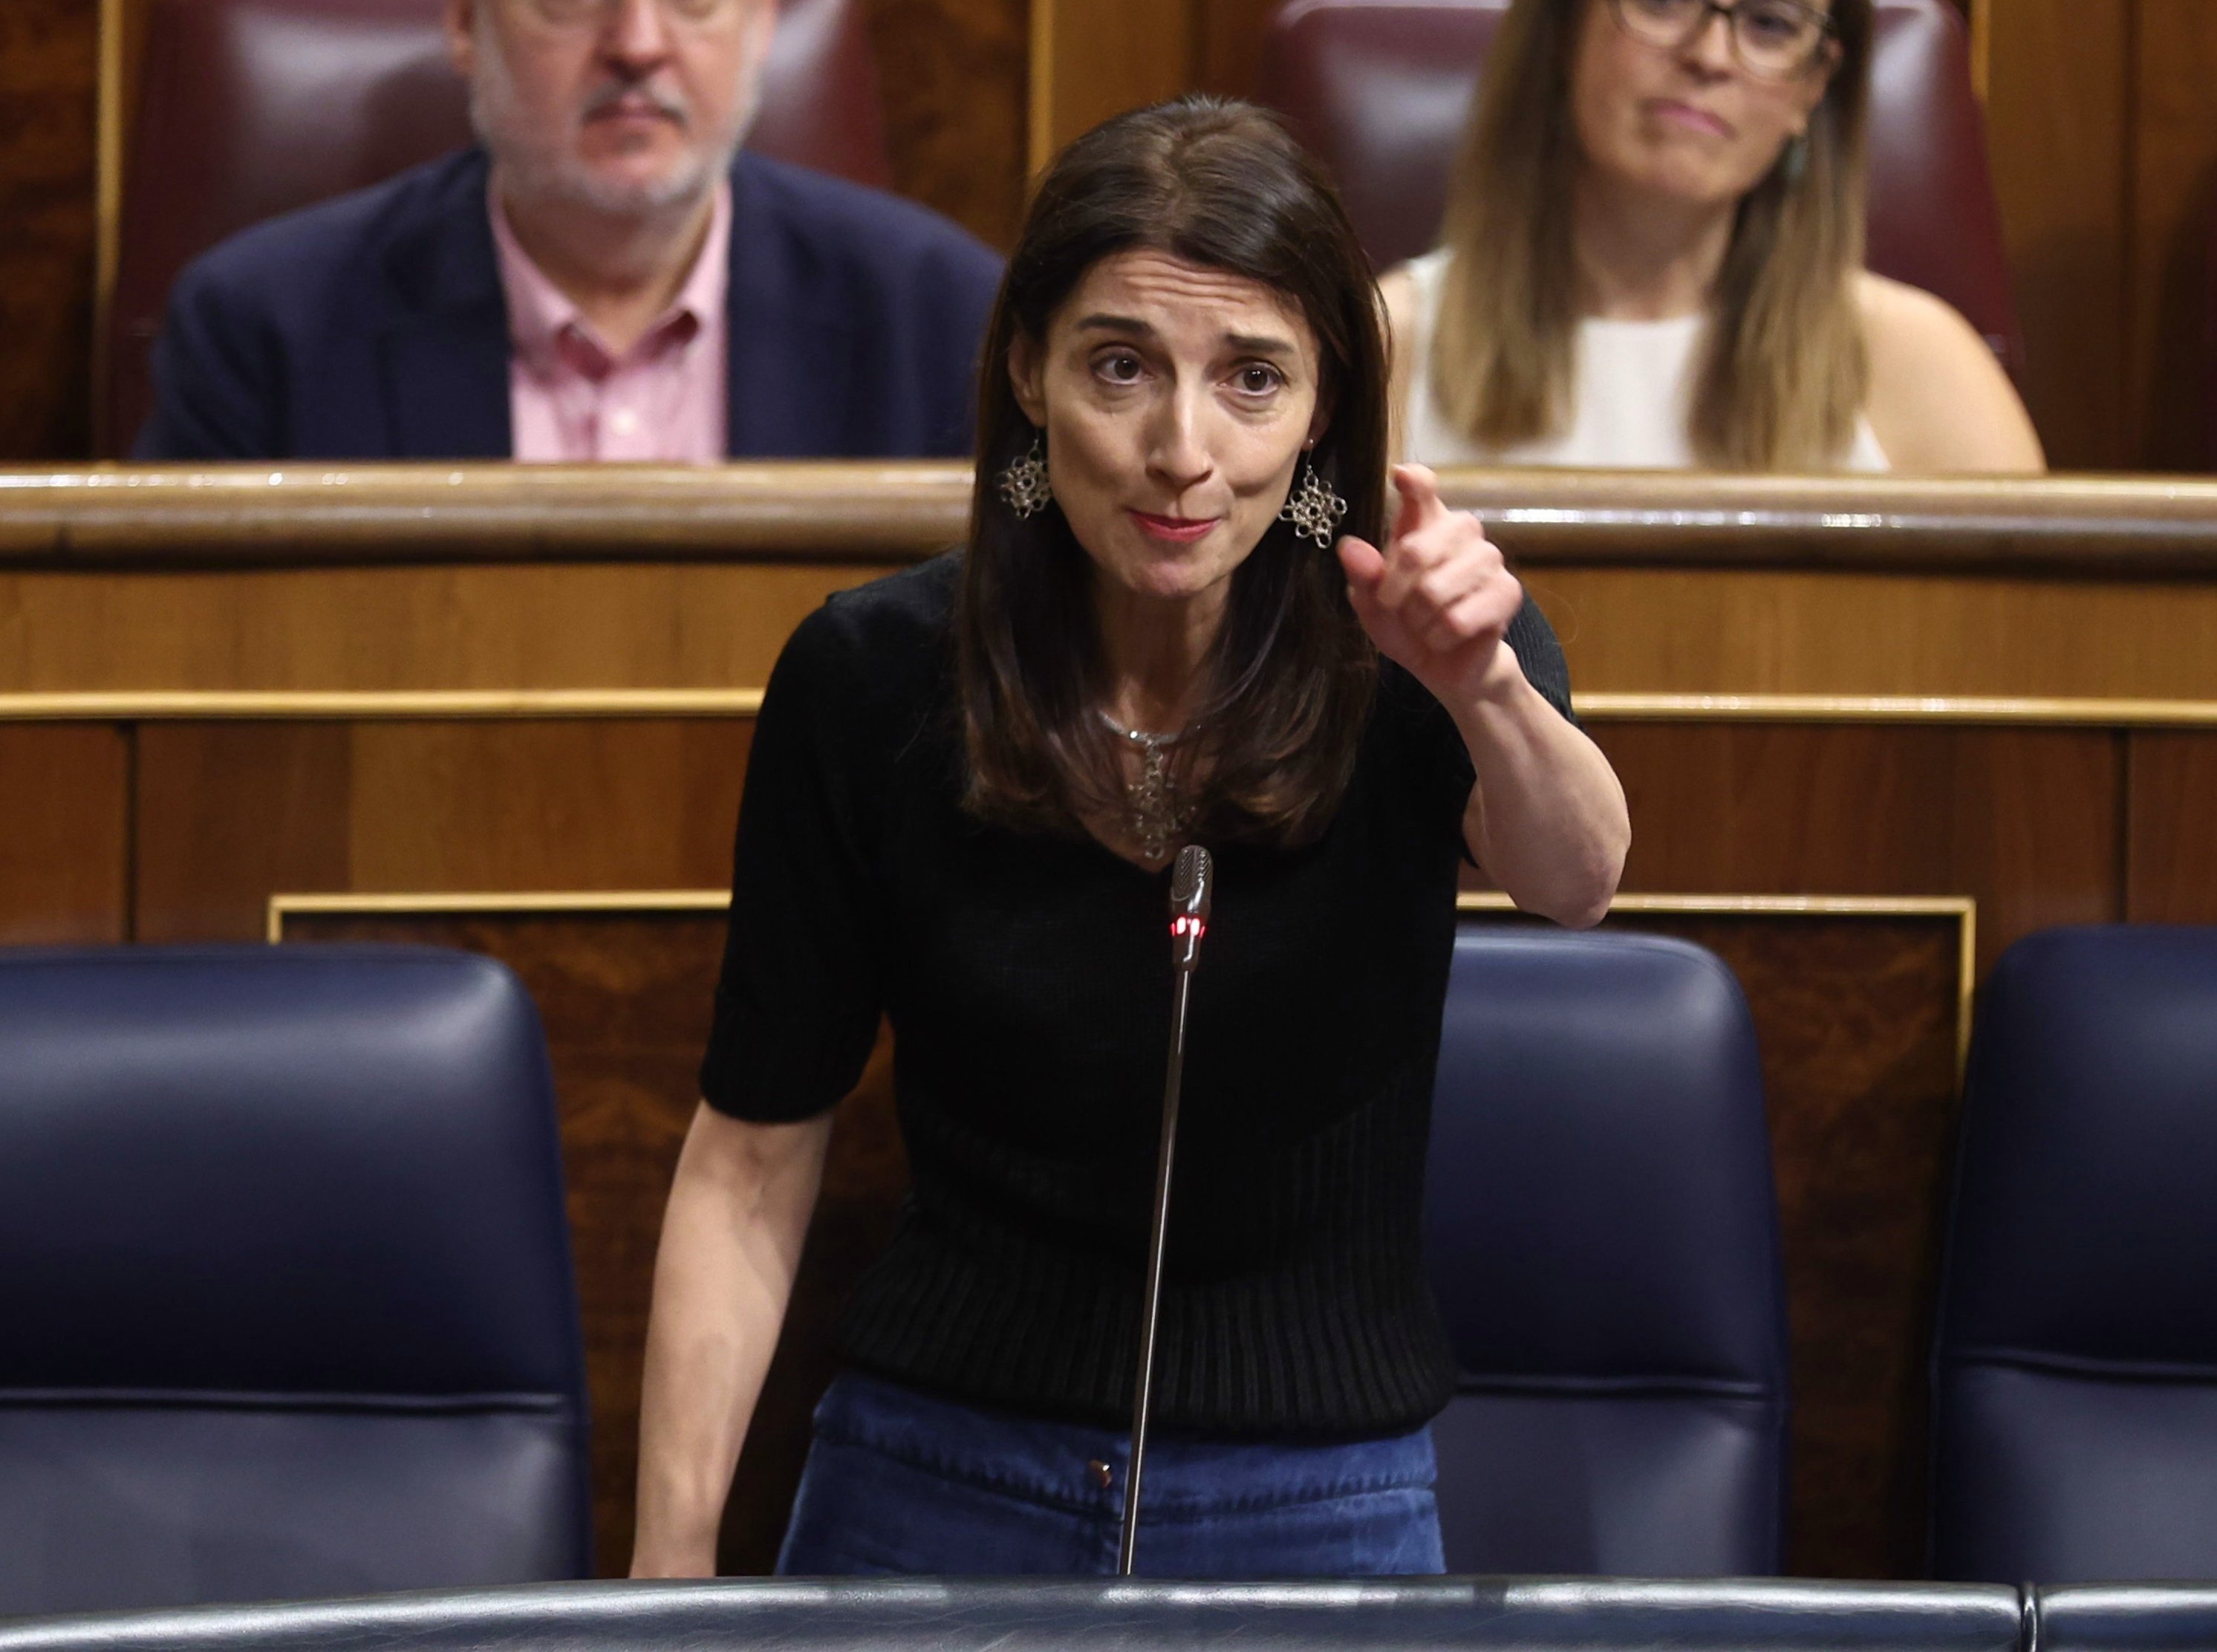 El govern espanyol retreu a Ponsatí que té l'"obligació" de presentar-se davant la justícia